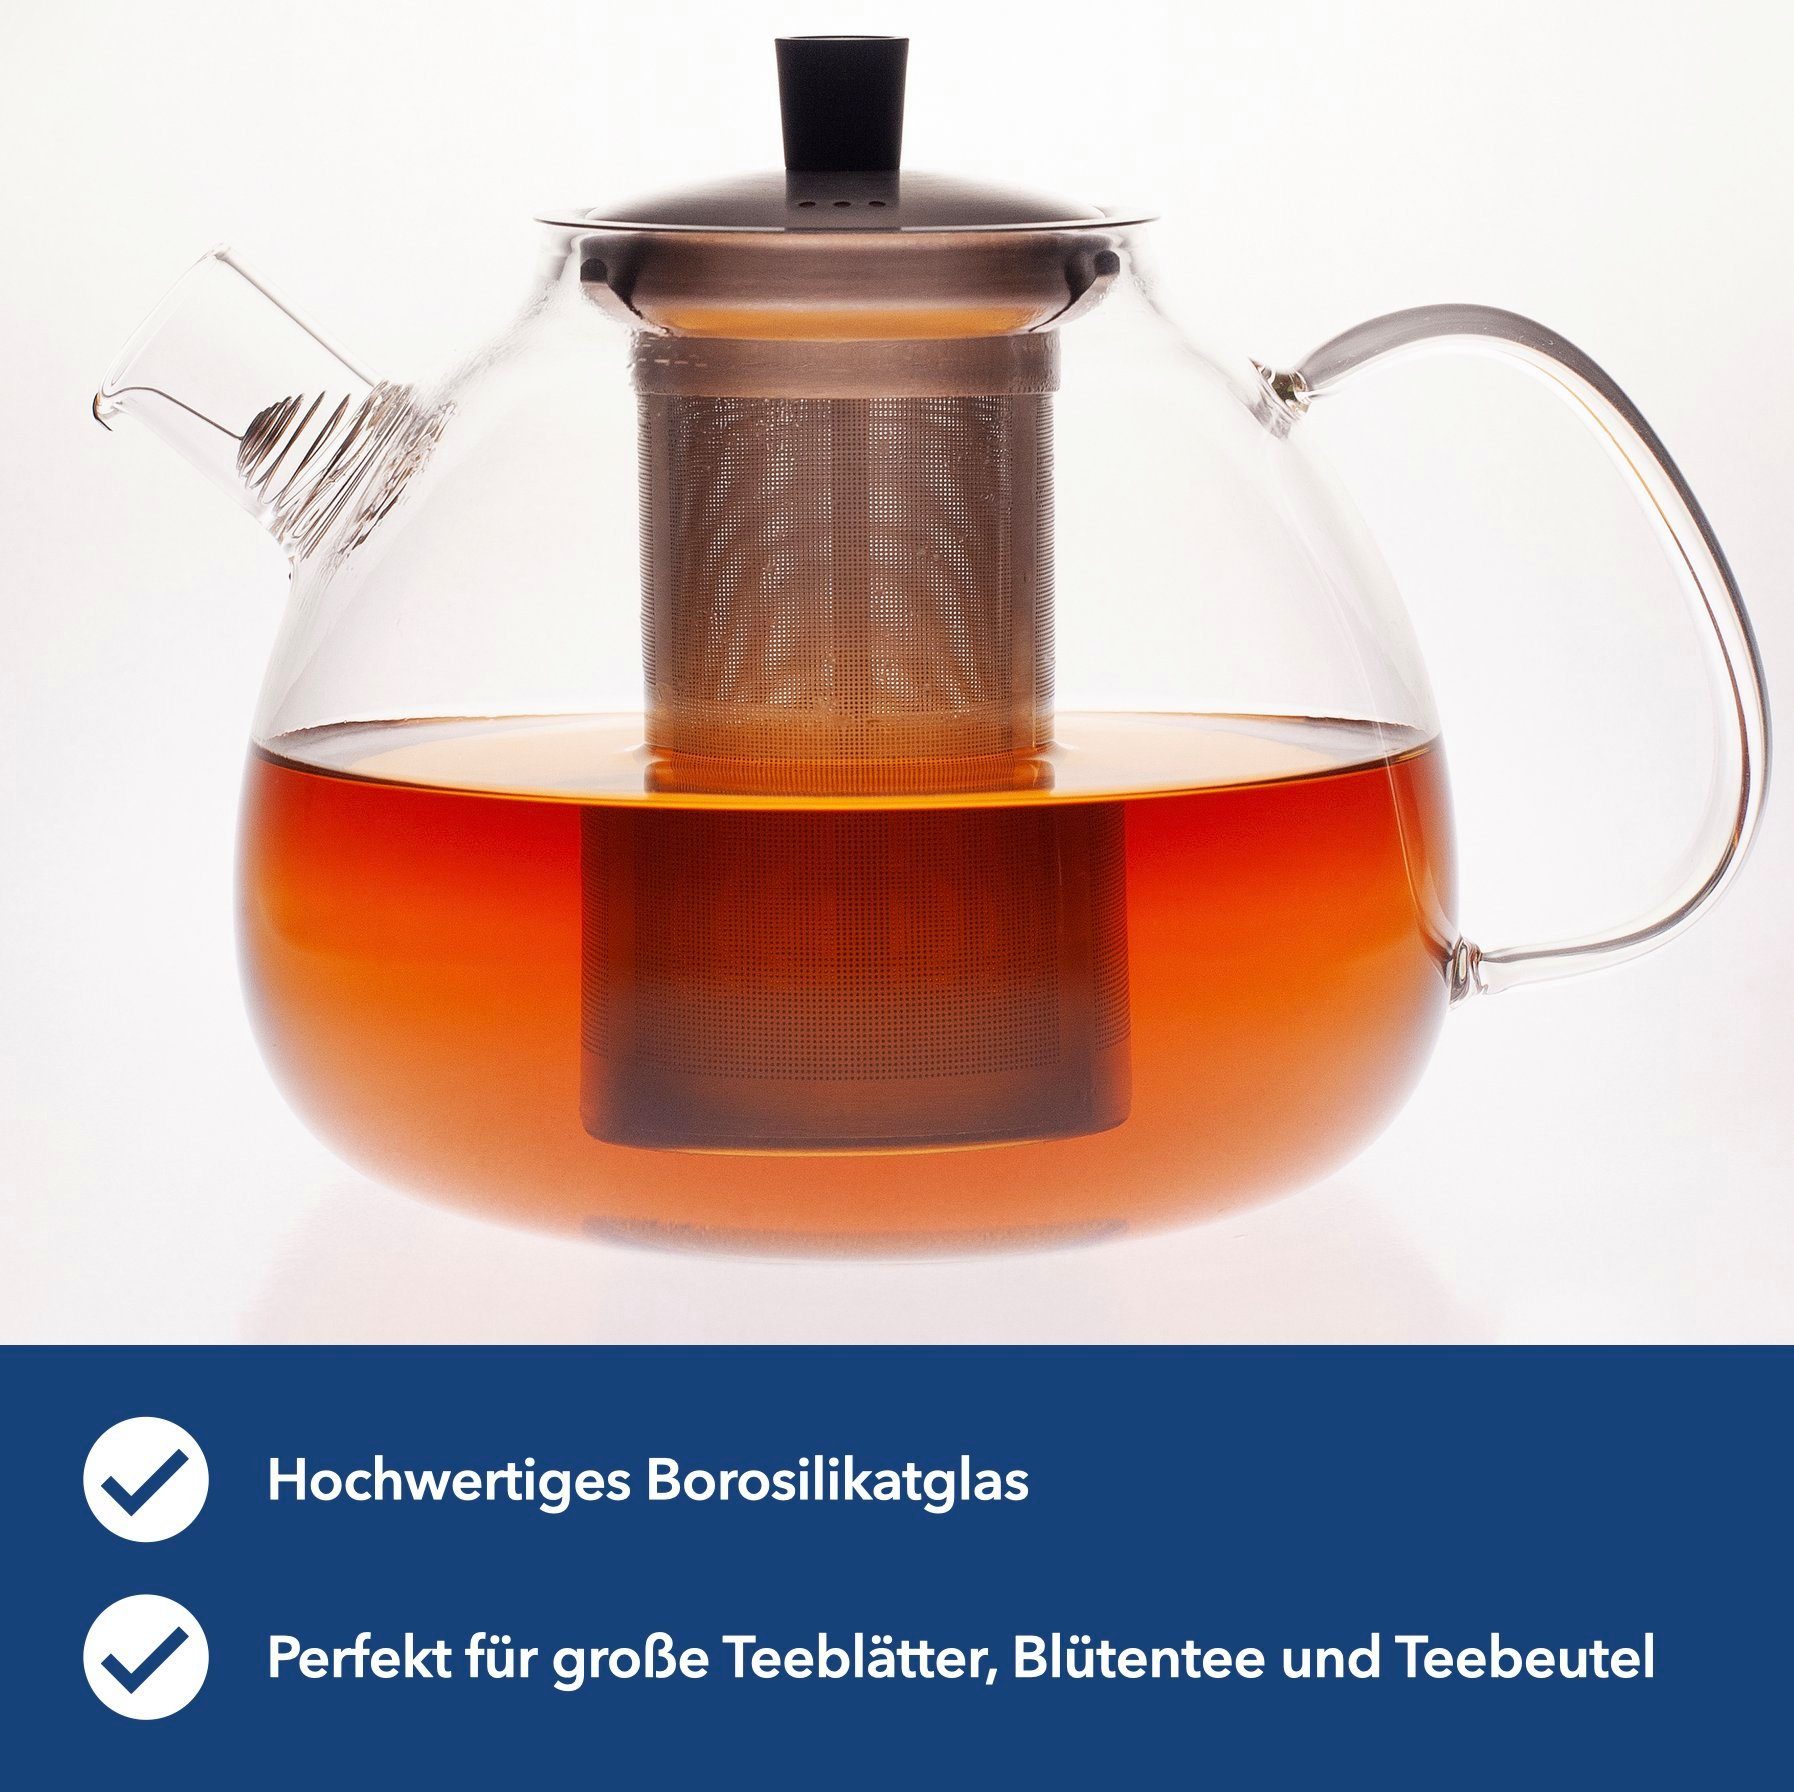 Design, und Auffangdraht aus inkl. Teekanne und Premium Modernes Edelstahl), Hanseküche ml l, Teebereiter, Glas Ultrafeinfilter (Teekanne, 1.5 Langlebig Teekanne Hochwertig 1500